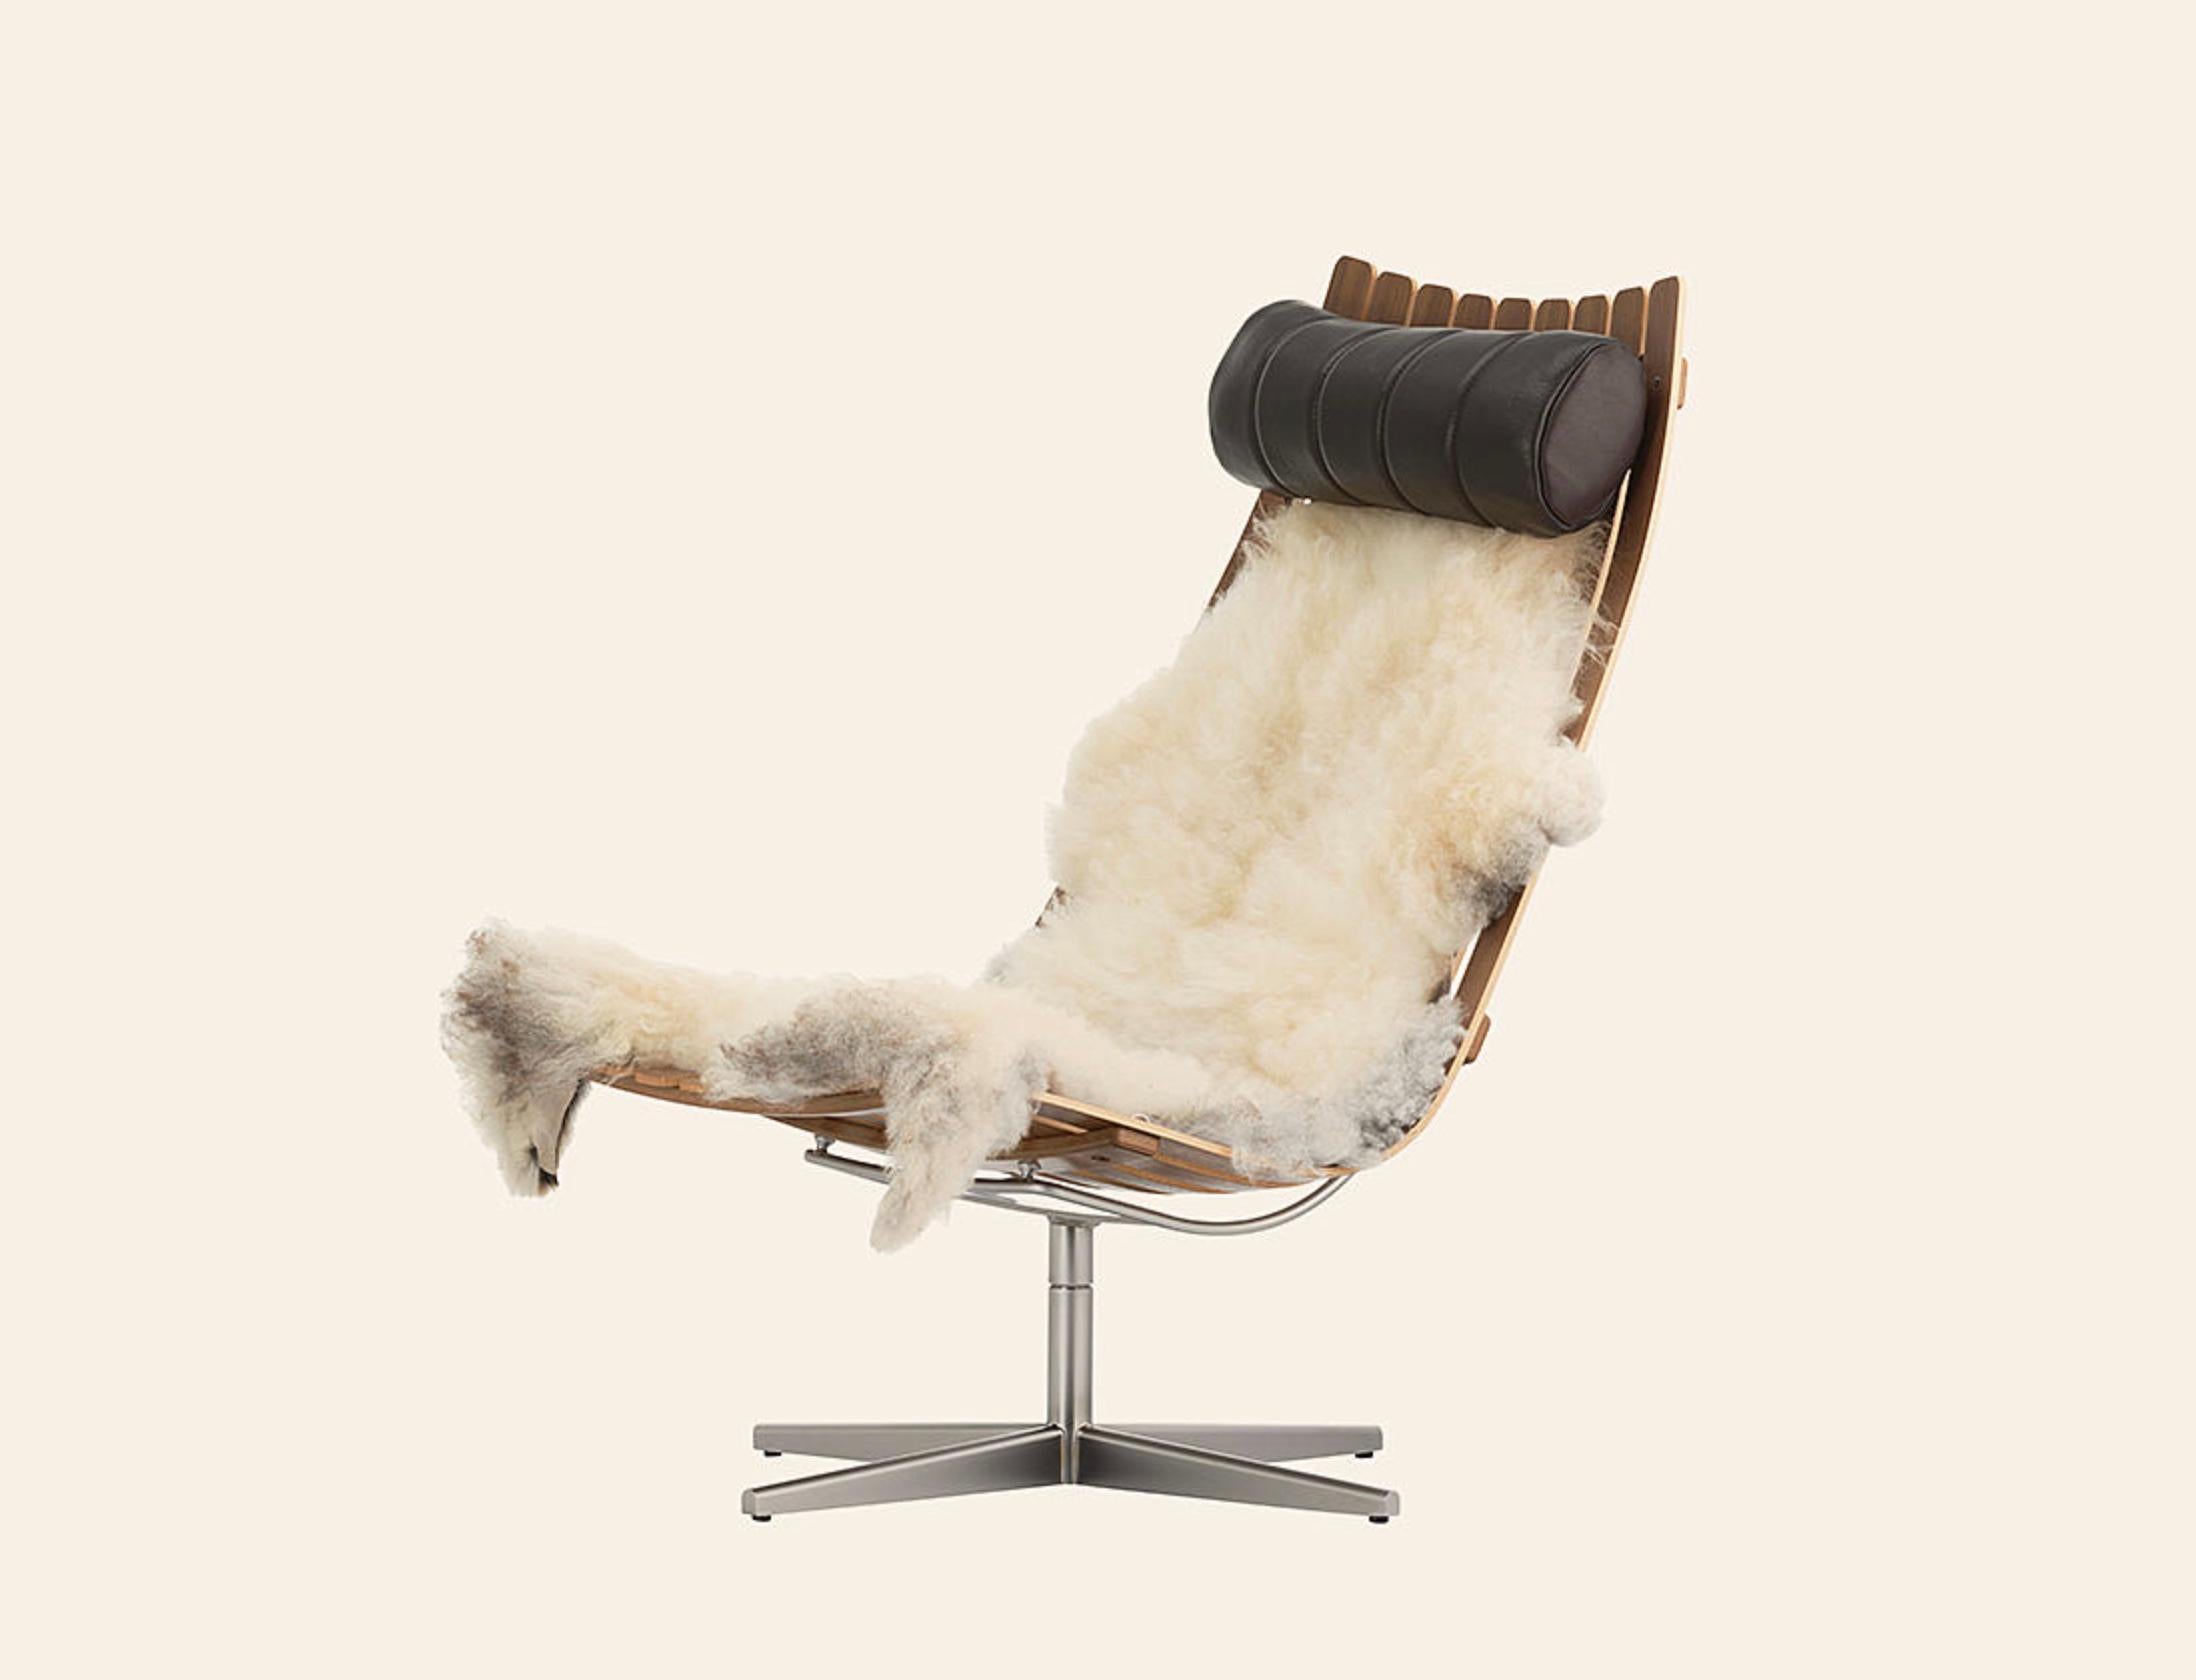 Hans Brattrud 'Scandia' Loungesessel in Nussbaum für Fjordfiesta. Entworfen im Jahr 1959. Neue, aktuelle Produktion.

Sessel aus laminiertem, lackiertem Nussbaum und satiniertem, verchromtem Drehfuß. Der Preis beinhaltet eine Kopfstütze aus Leder